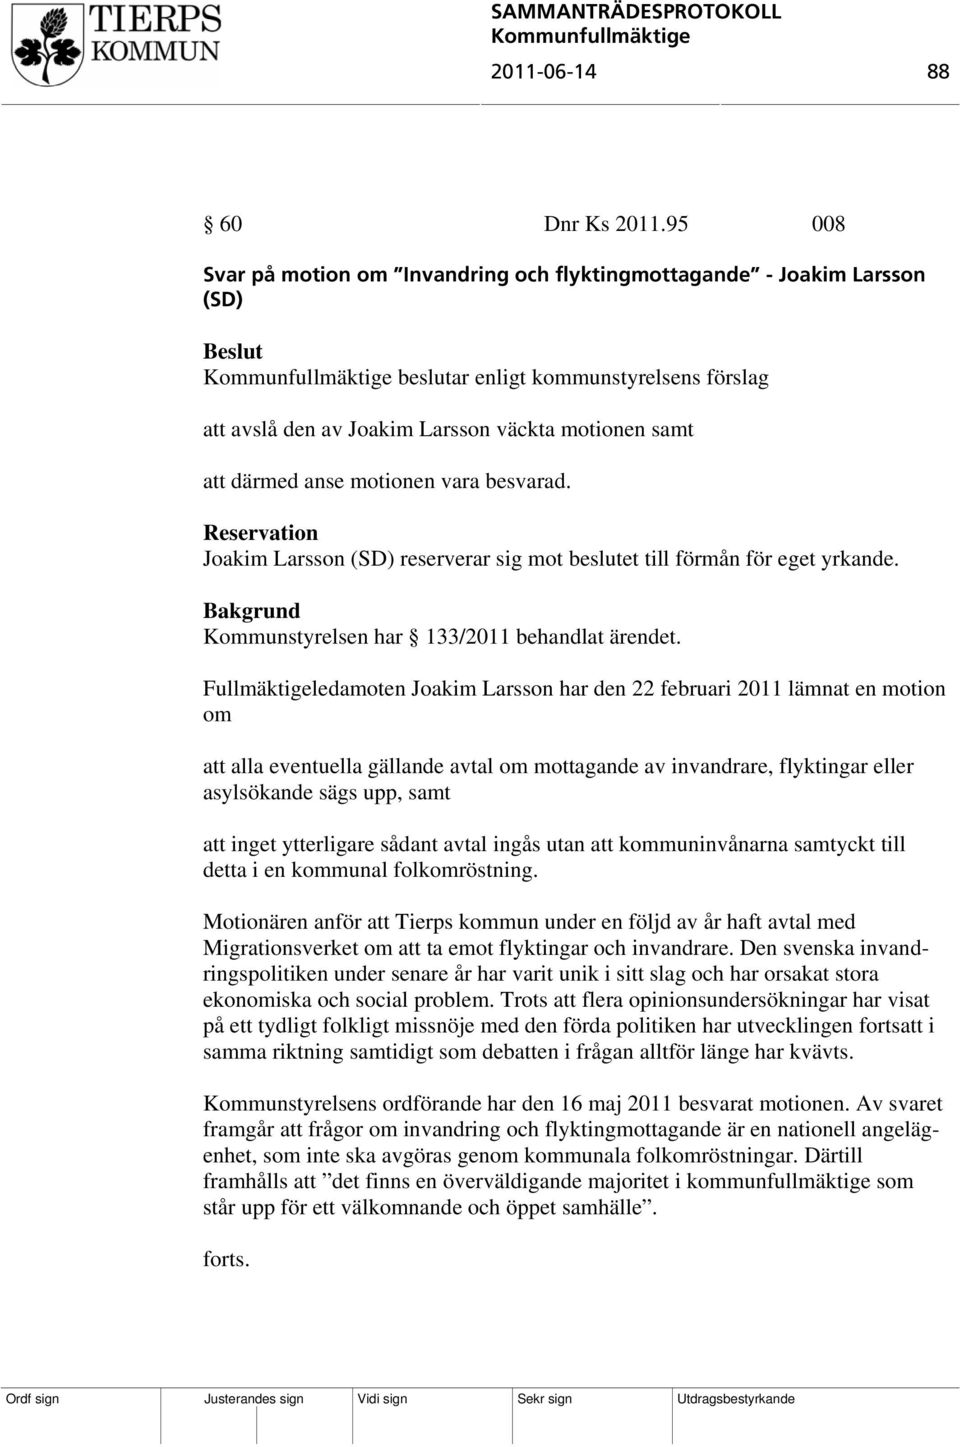 vara besvarad. Reservation Joakim Larsson (SD) reserverar sig mot beslutet till förmån för eget yrkande. Kommunstyrelsen har 133/2011 behandlat ärendet.